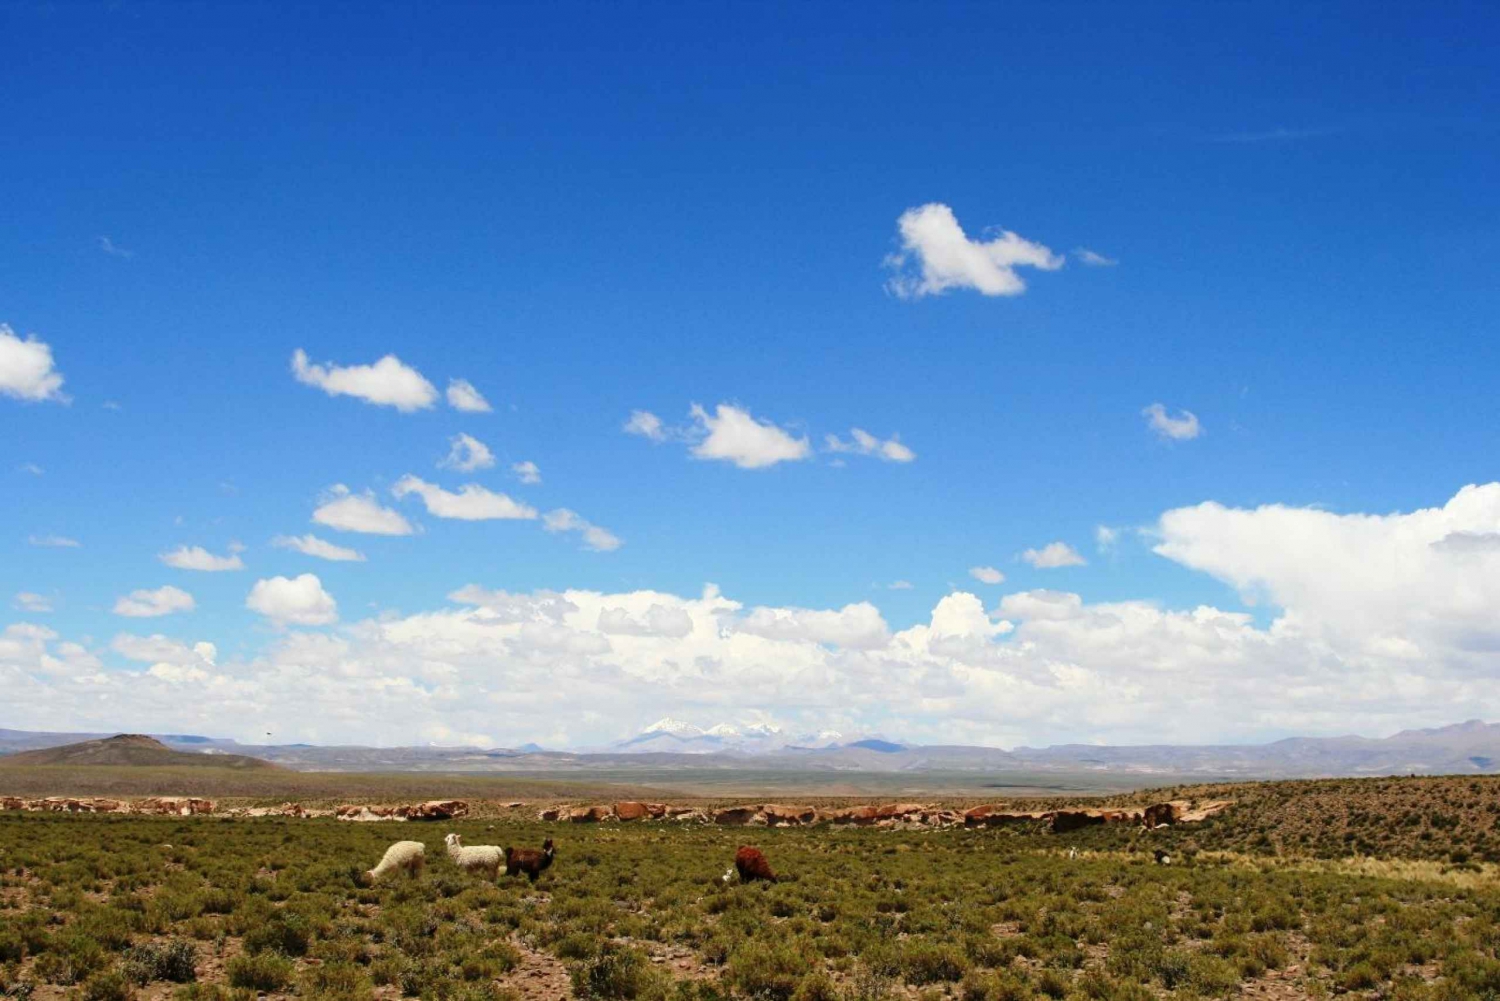 Servicio semiprivado: San Pedro de Atacama - Uyuni 3d/2n